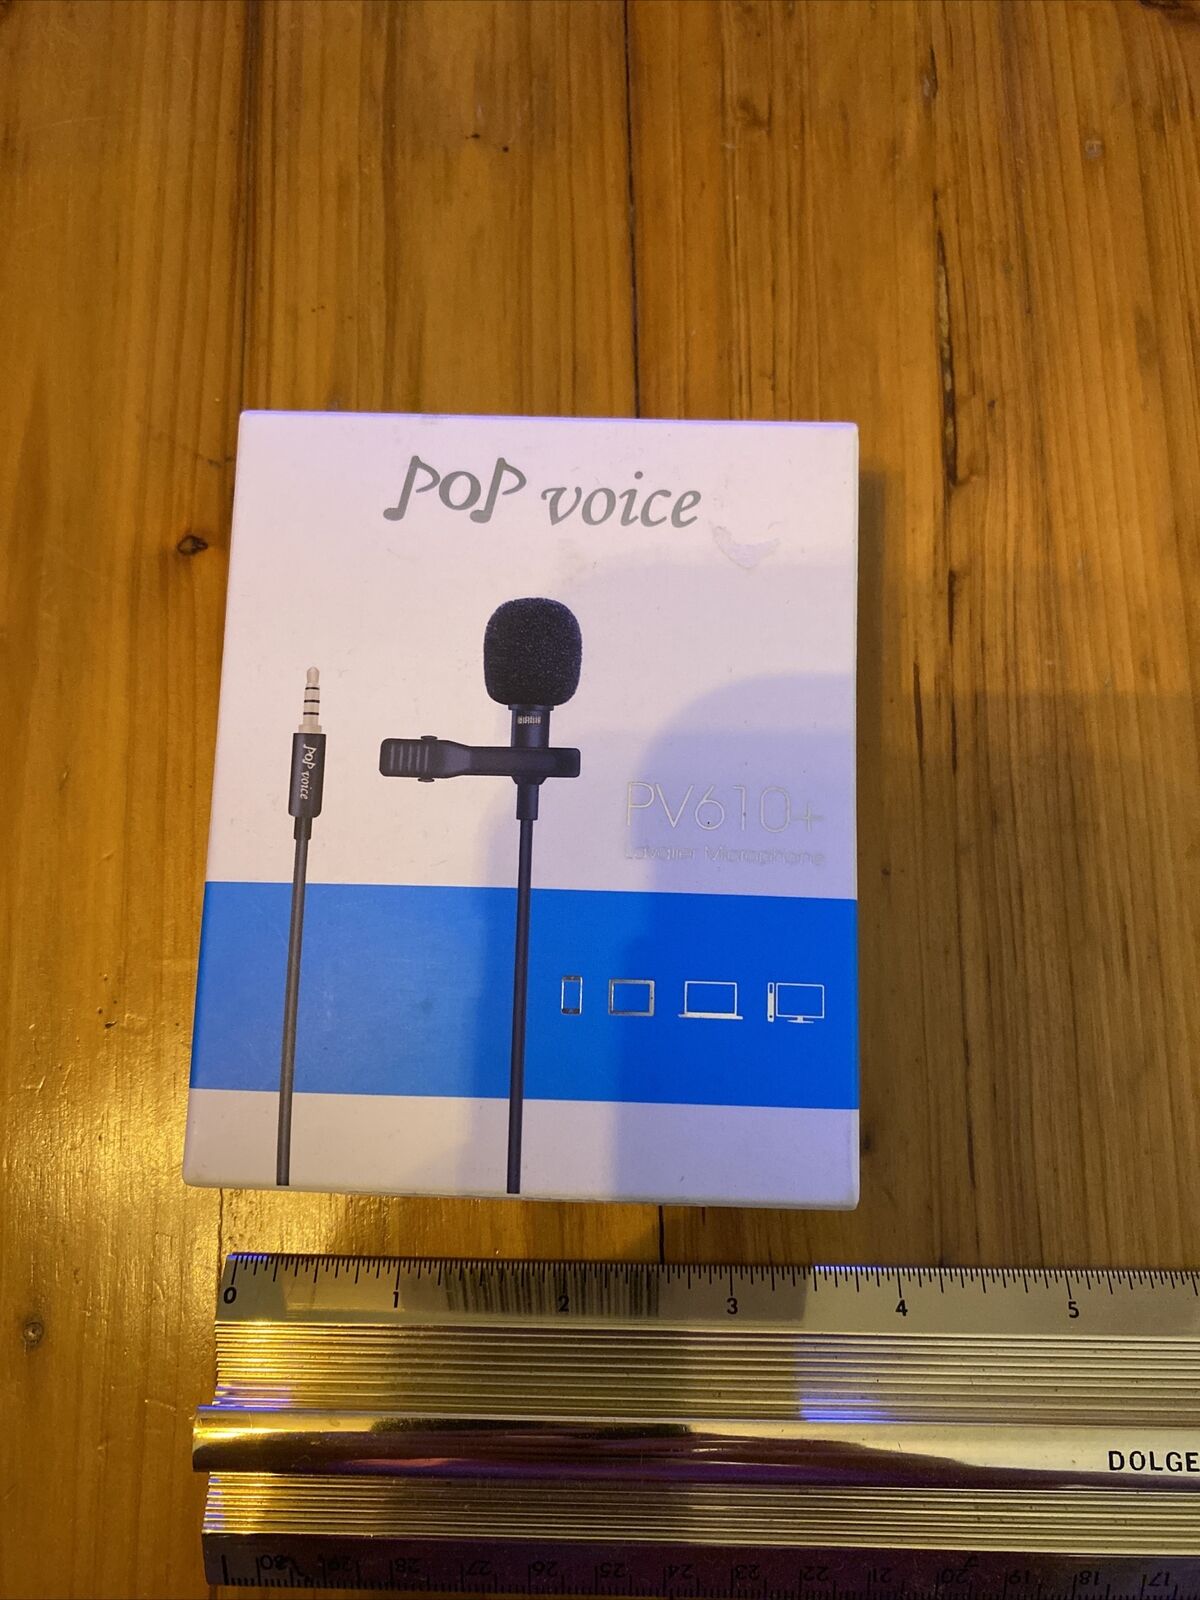 Pop Voice Pv610+ Lavalier Microphone